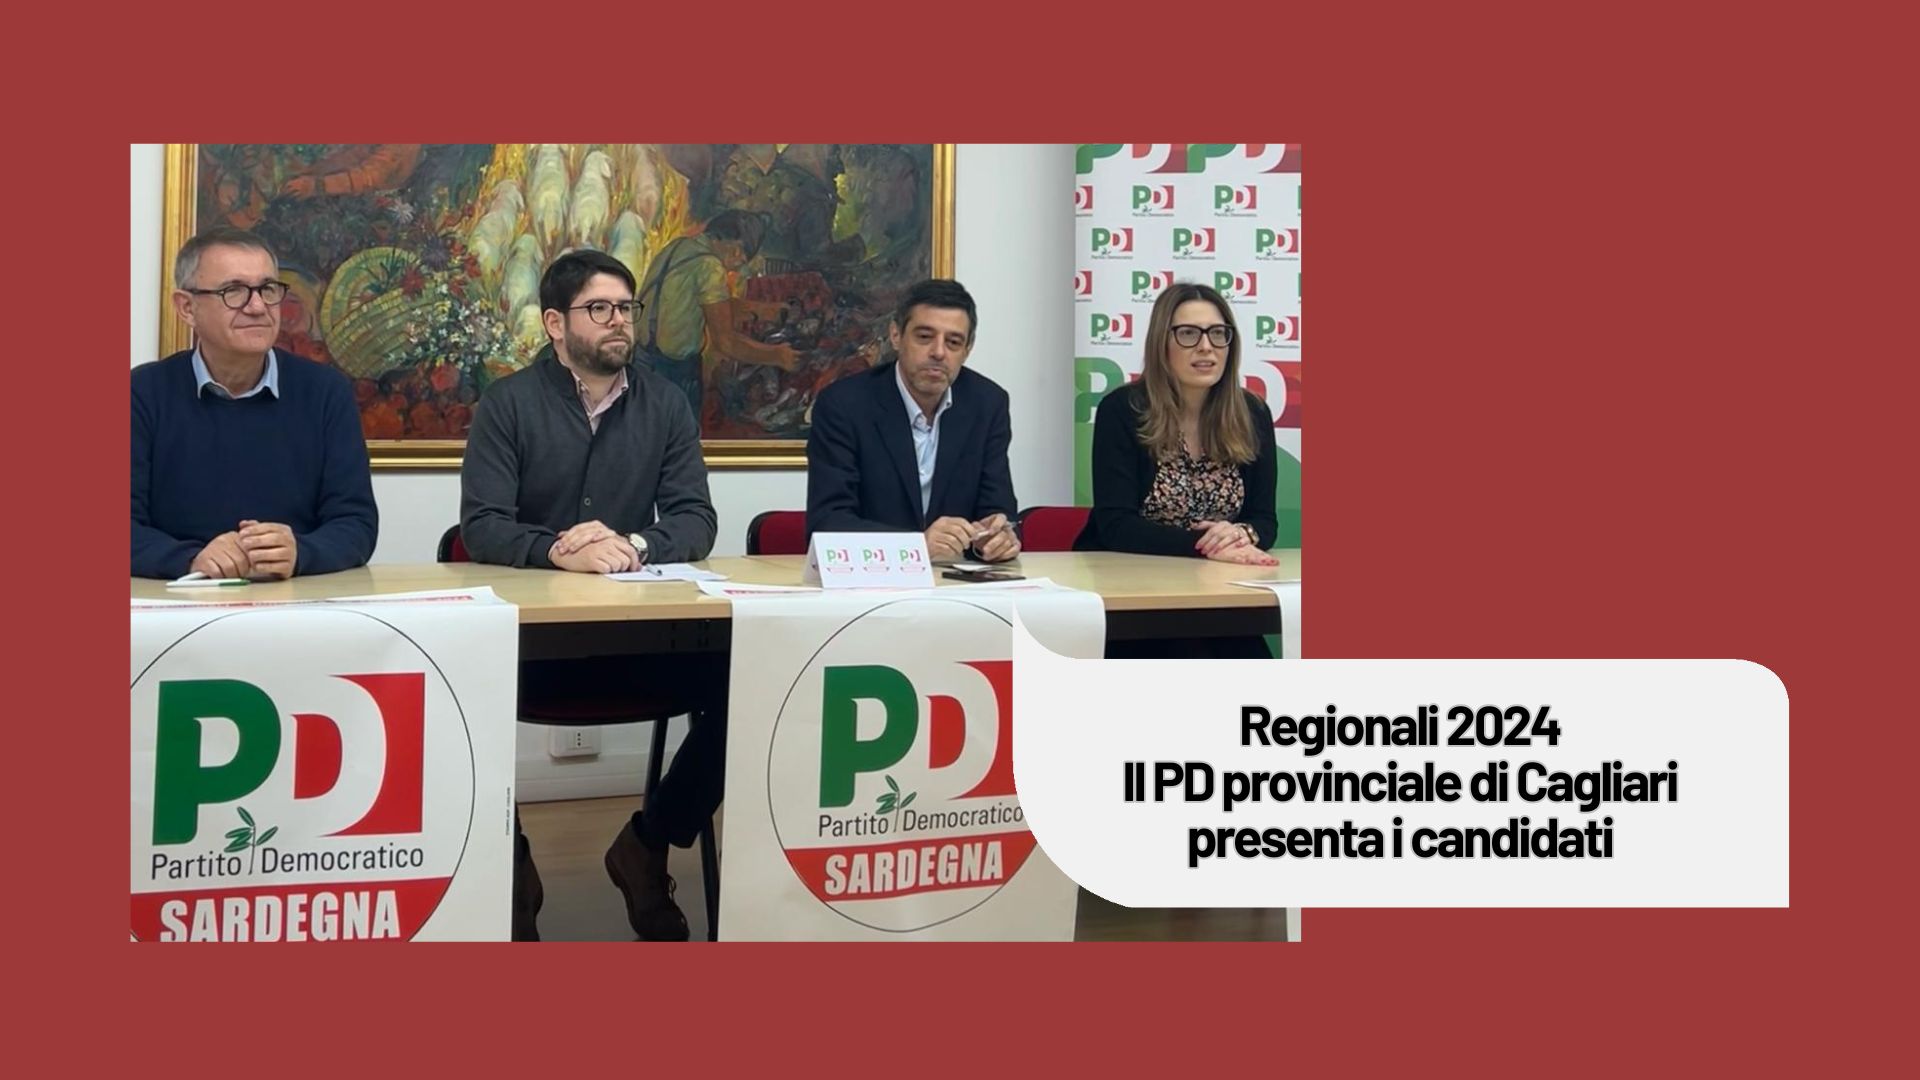 Regionali 2024. Il PD provinciale di Cagliari presenta i candidati.